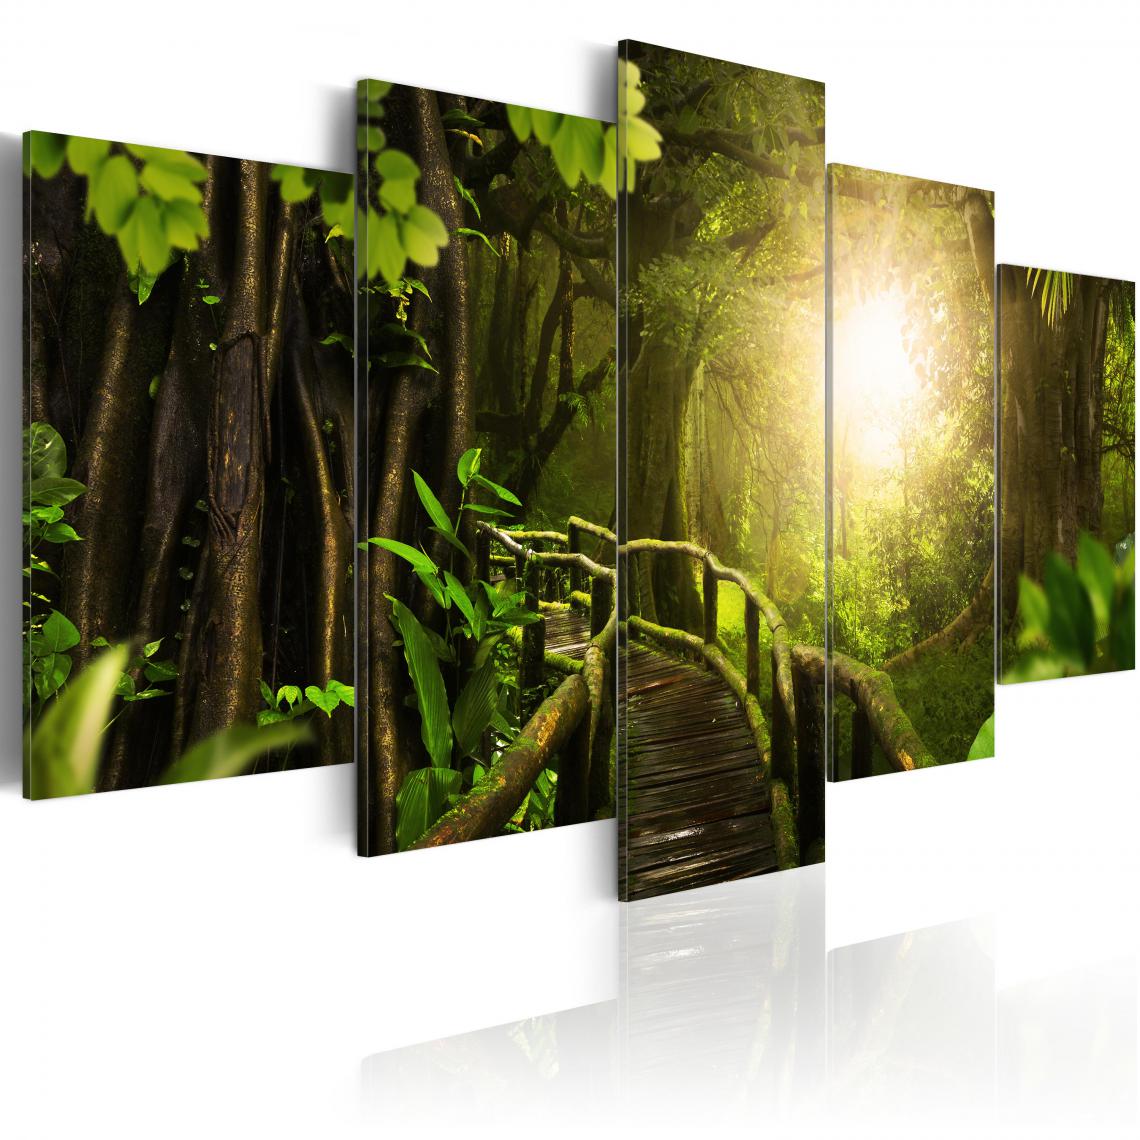 Decoshop26 - Tableau sur toile en 5 panneaux décoration murale image imprimée cadre en bois à suspendre Jungle magique 200x100 cm 11_0006317 - Tableaux, peintures